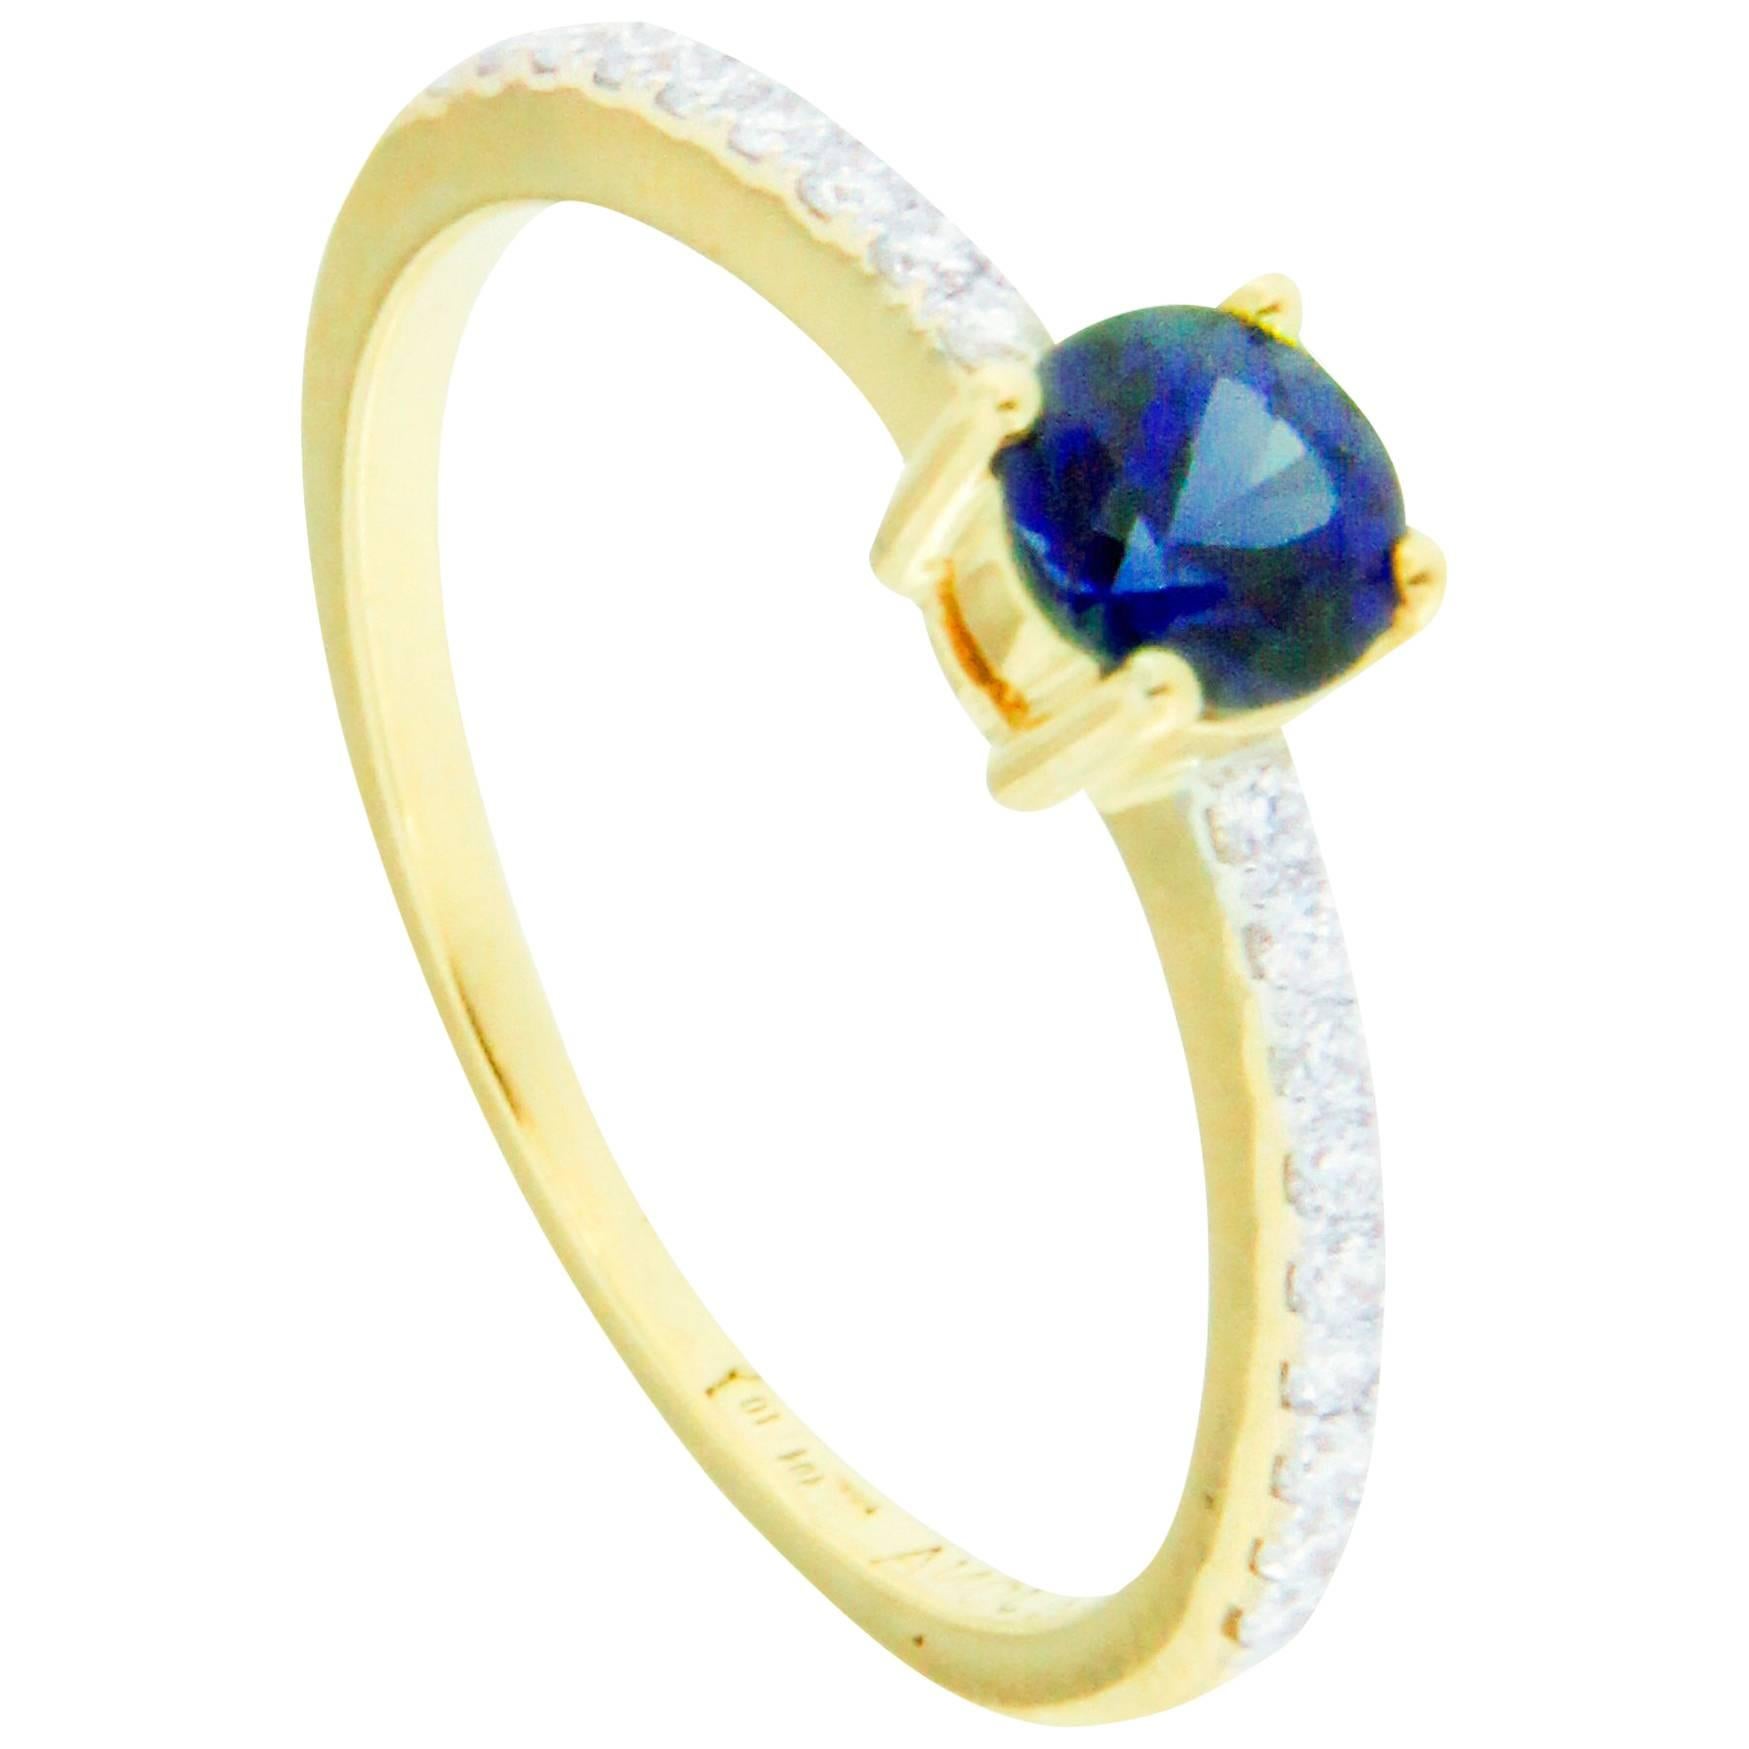 Jona Blue Sapphire White Diamond 18 Karat Yellow Gold Solitaire Ring